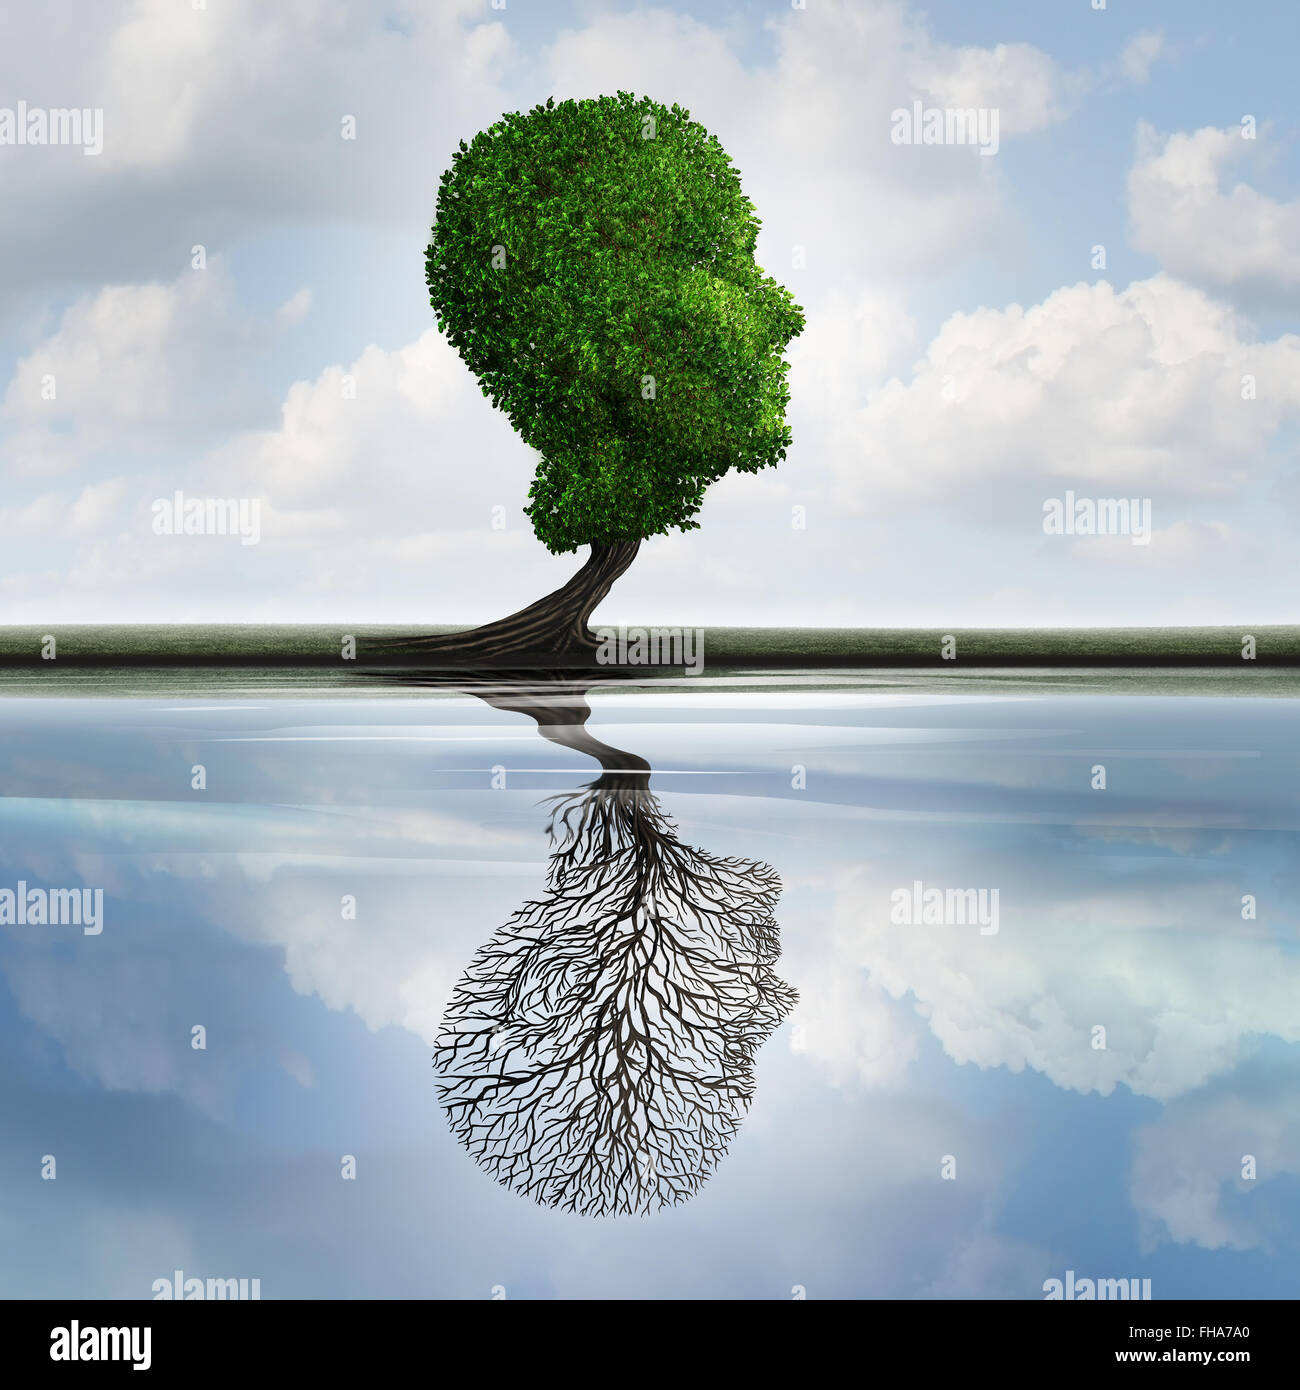 Versteckte Depression Konzept und private Gefühle Symbol als ein Baum mit Blättern, die Form eines menschlichen Kopfes mit einer Reflexion über Wasser mit einer leeren Anlage wie eine interne Psychologie Idee zur Visualisierung von Emotionen verborgen. Stockfoto